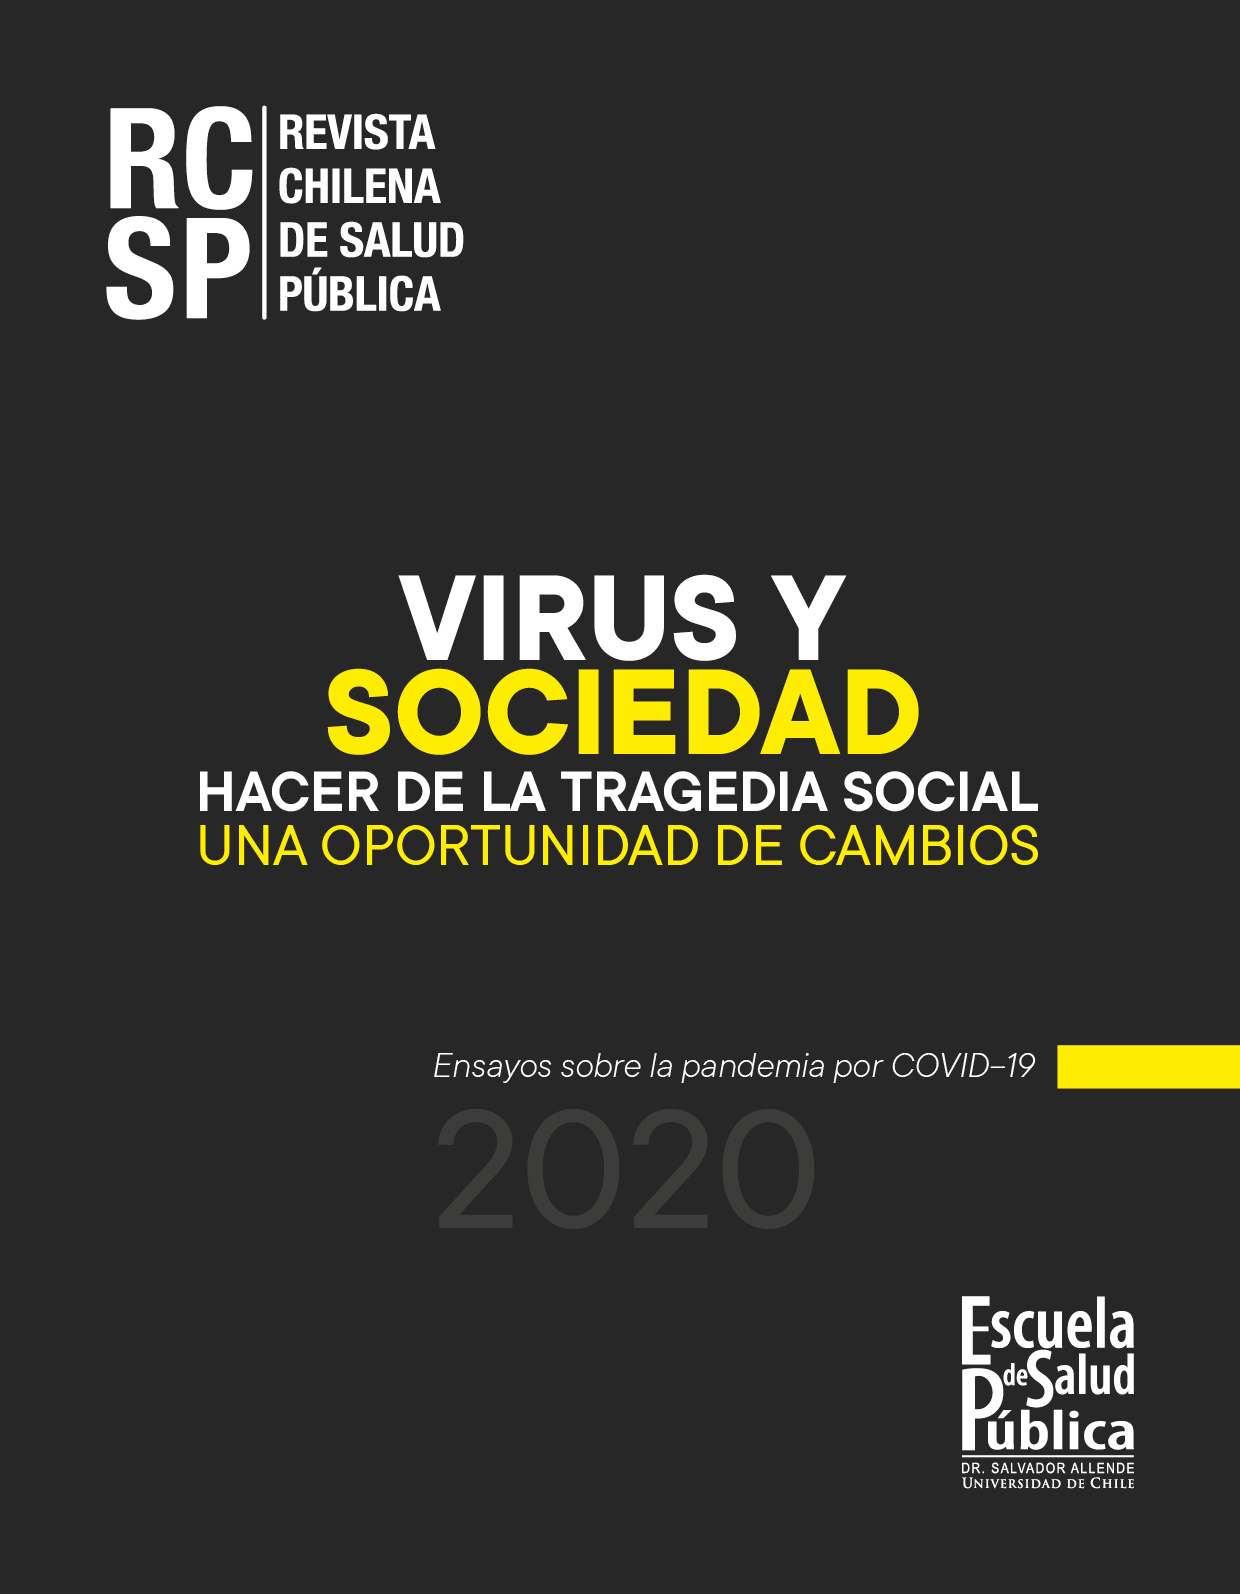 											Ver 2020: Número especial "Virus y Sociedad: hacer de la tragedia social una oportunidad de cambios"
										